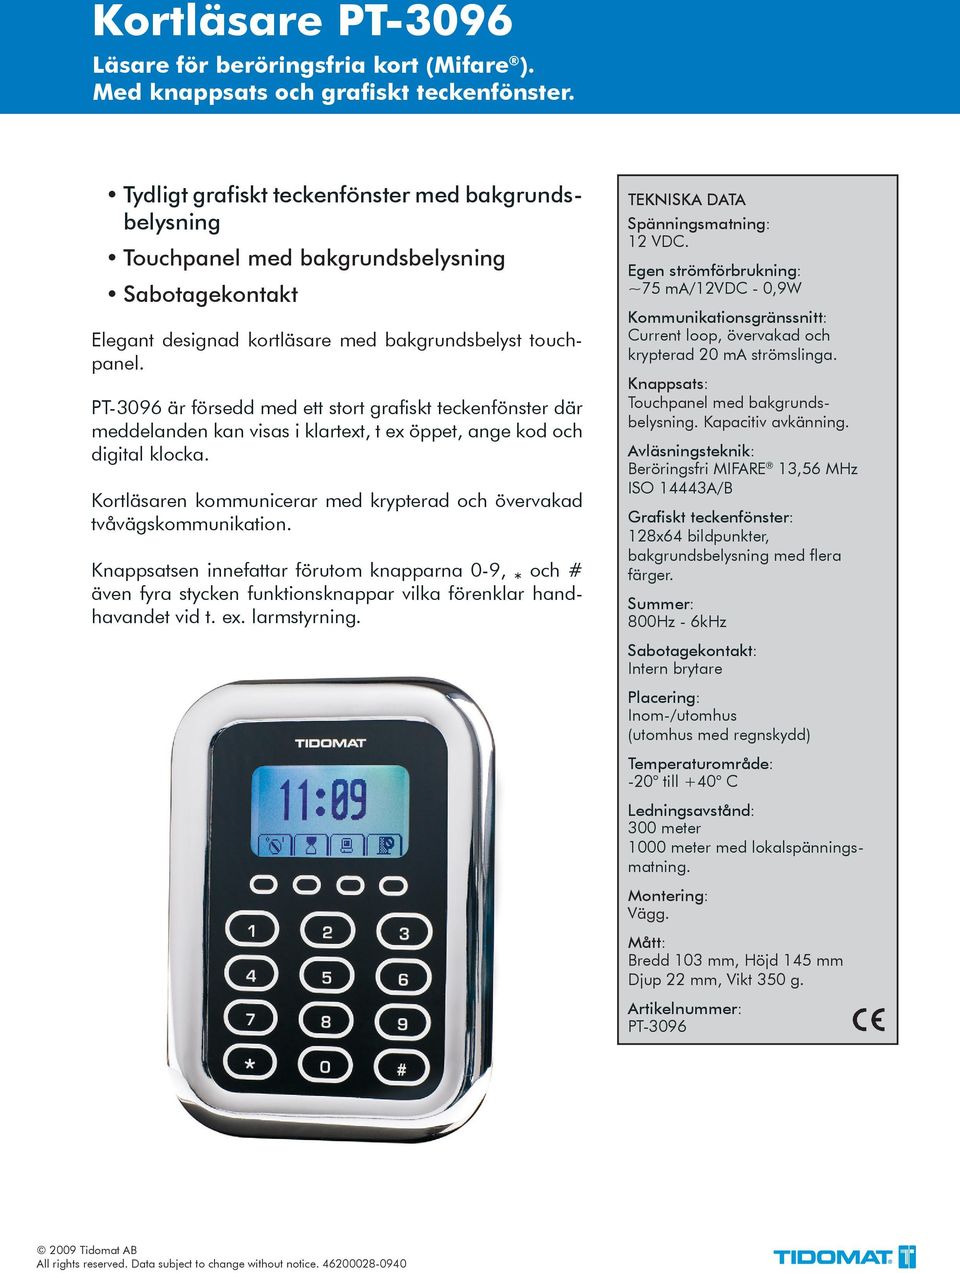 PT-3096 är försedd med ett stort grafiskt teckenfönster där meddelanden kan visas i klartext, t ex öppet, ange kod och digital klocka.